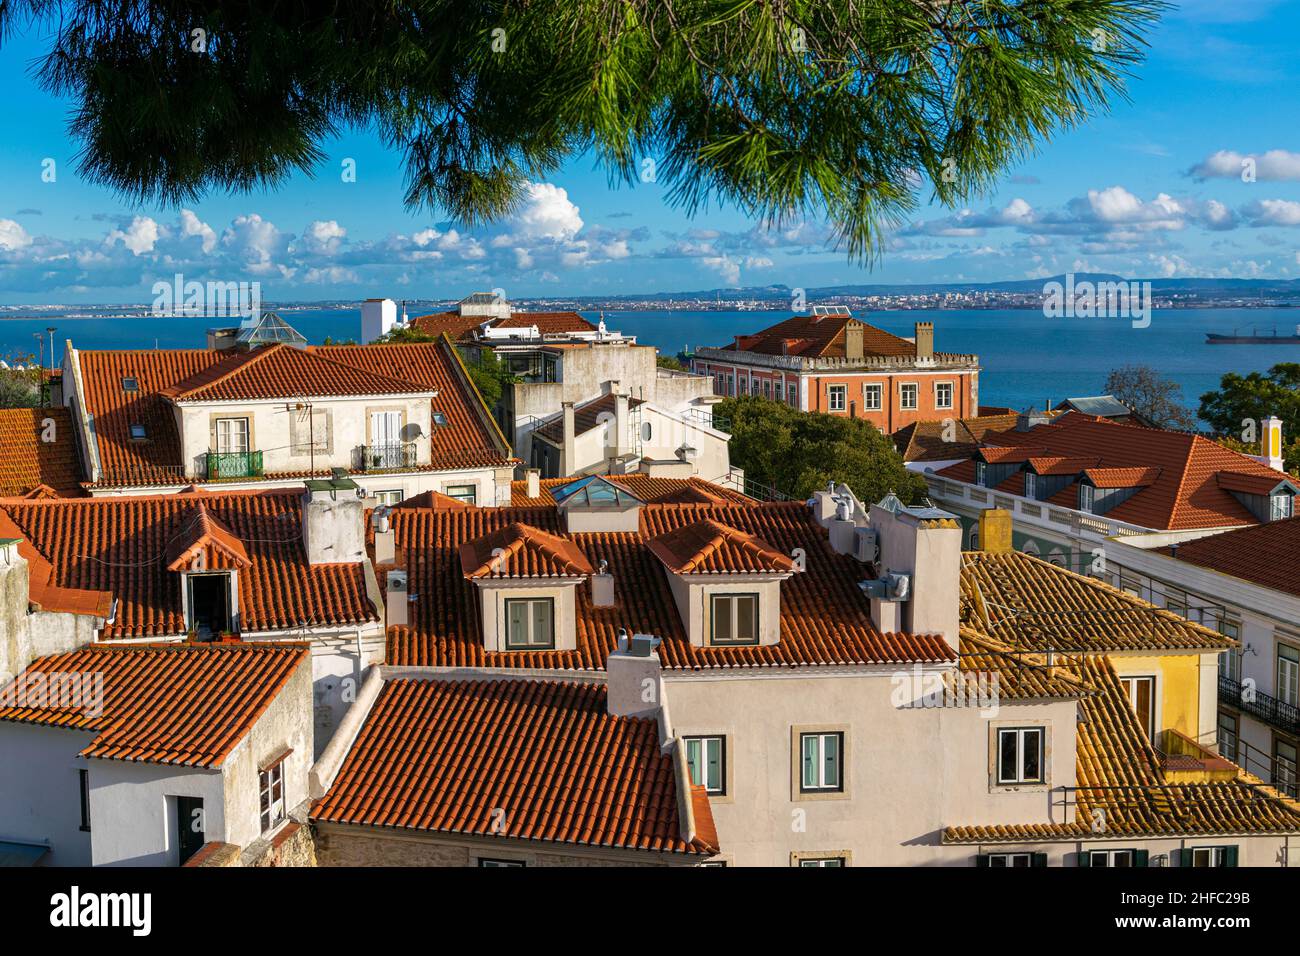 Lisbona, Portogallo - 21 Nov 2019: Lisbona tradizionale e panoramica con case sul tetto di colore arancione, il fiume Douro e barche al porto. Bella e tranquilla Foto Stock